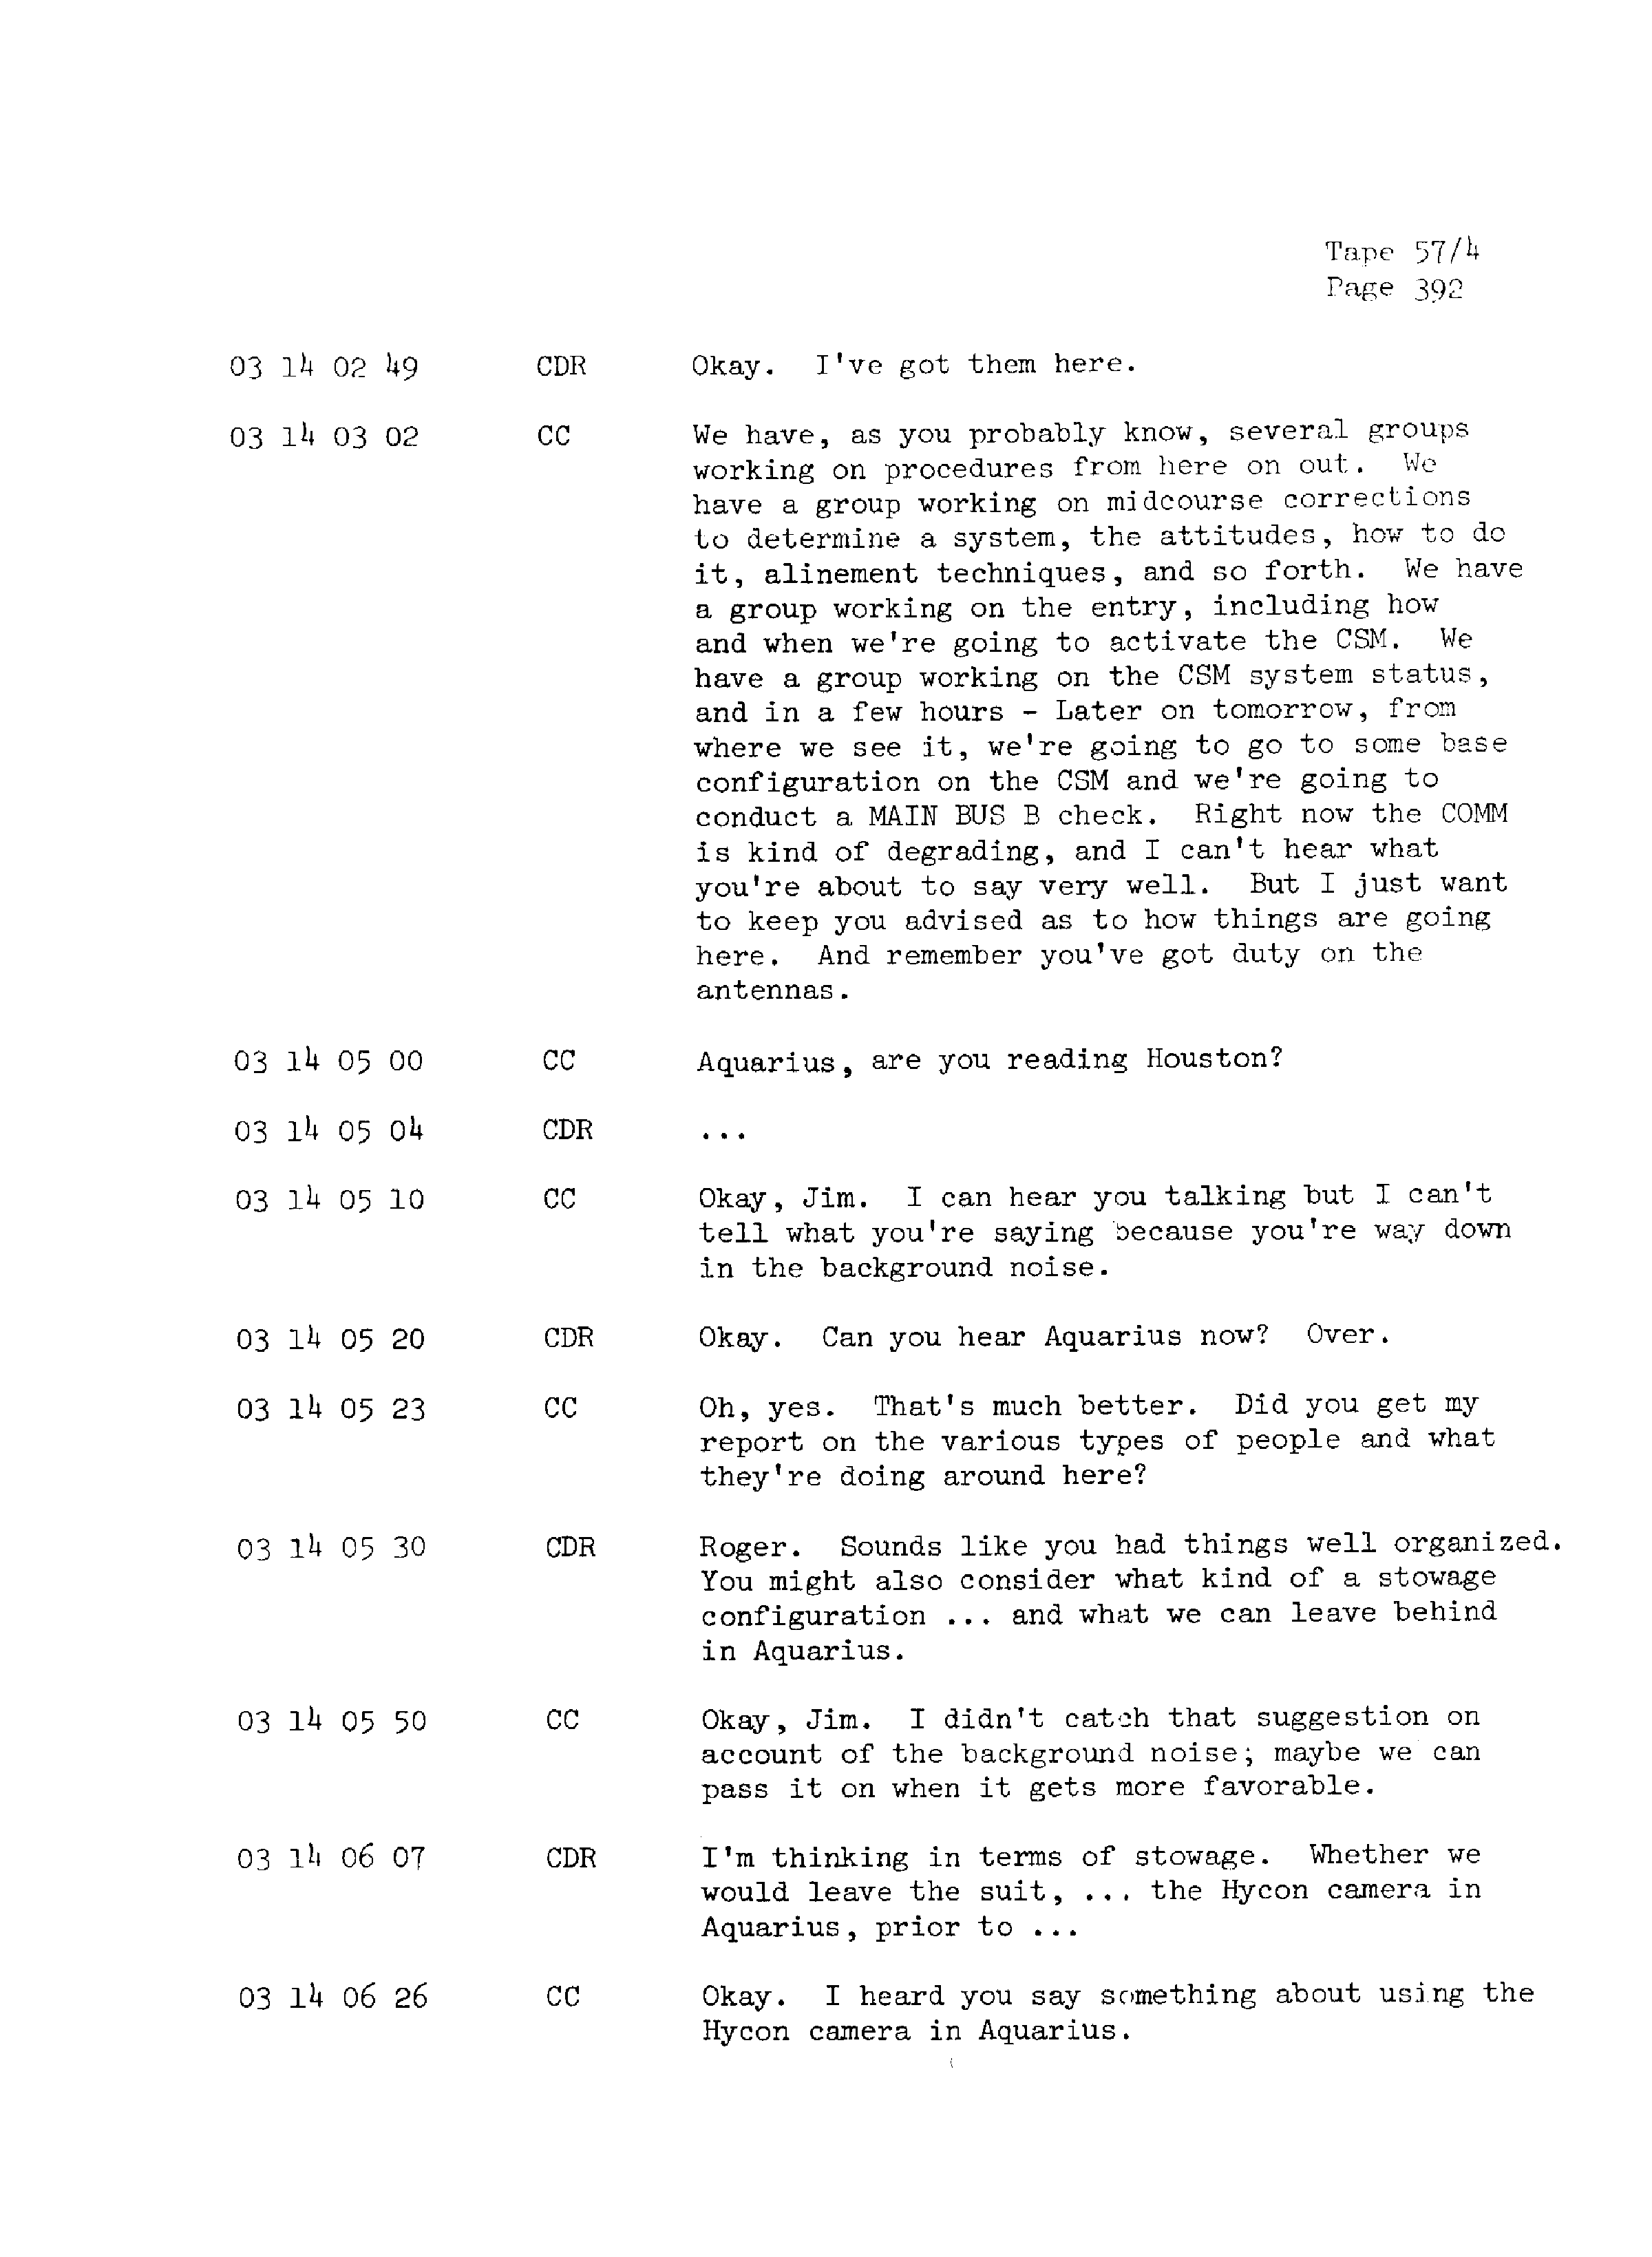 Page 399 of Apollo 13’s original transcript